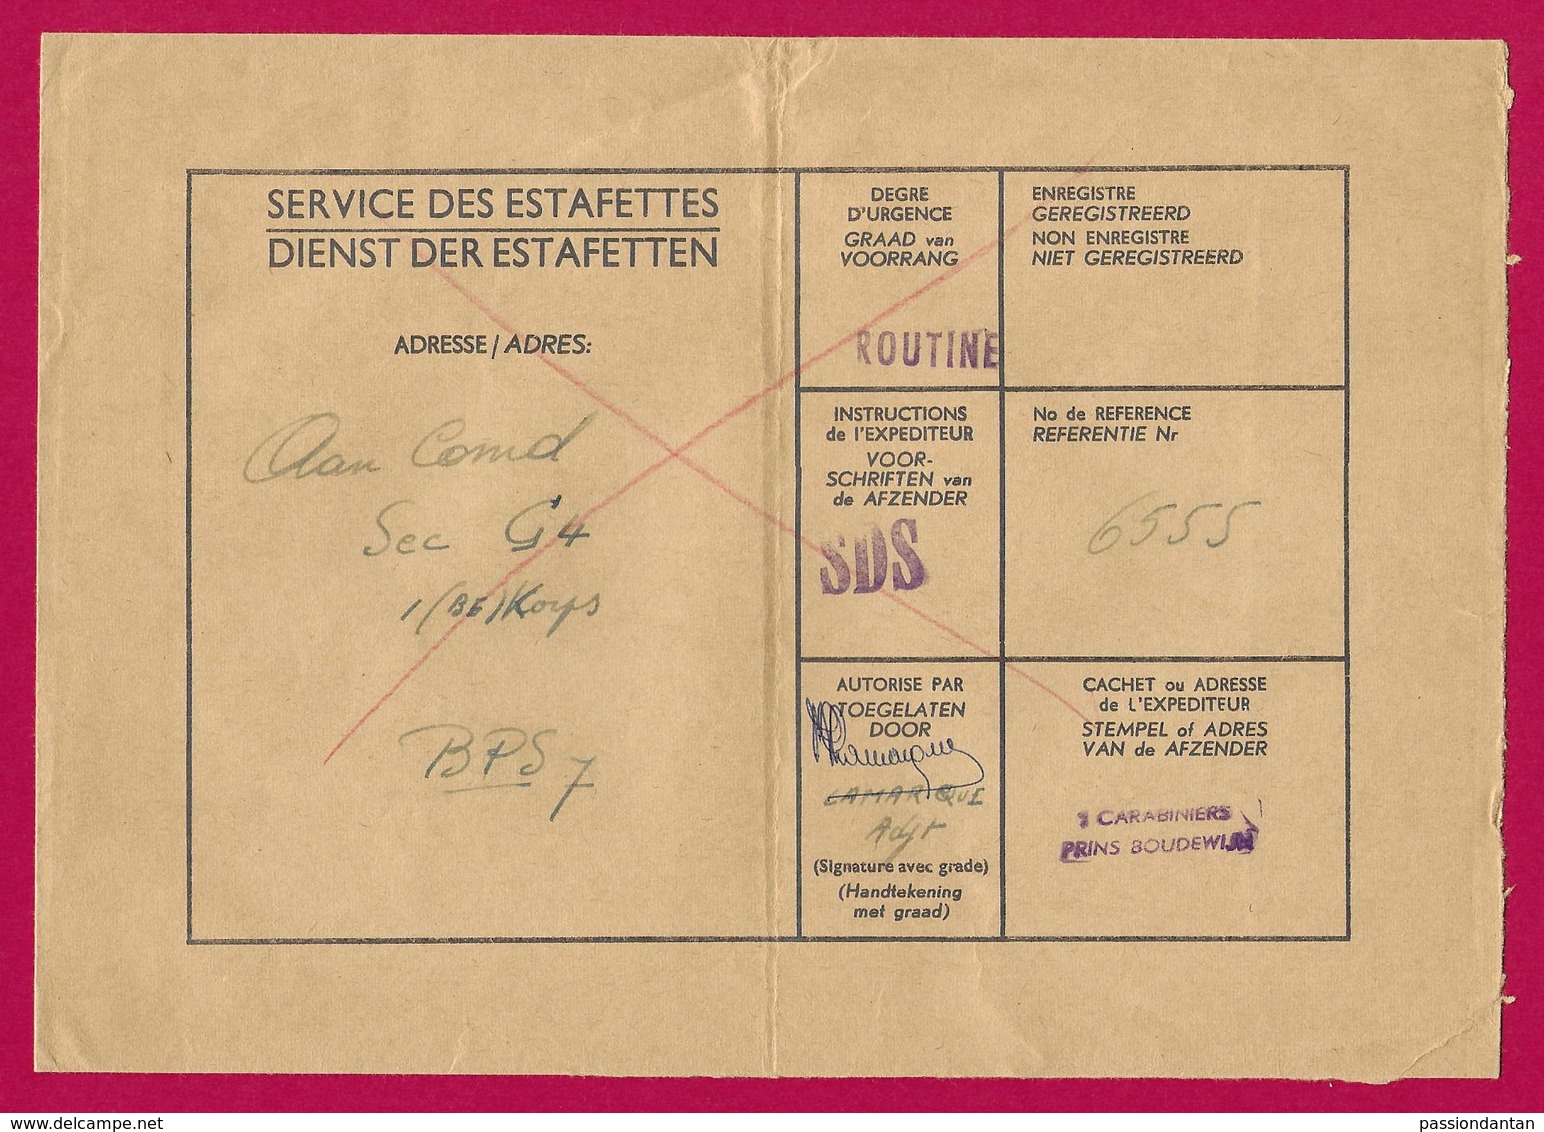 Enveloppe Du Service Des Estafettes Belges Datée De 1965 - Expédiée Du 1er Carabiniers Prins Boudewijn - Marcas De La Armada